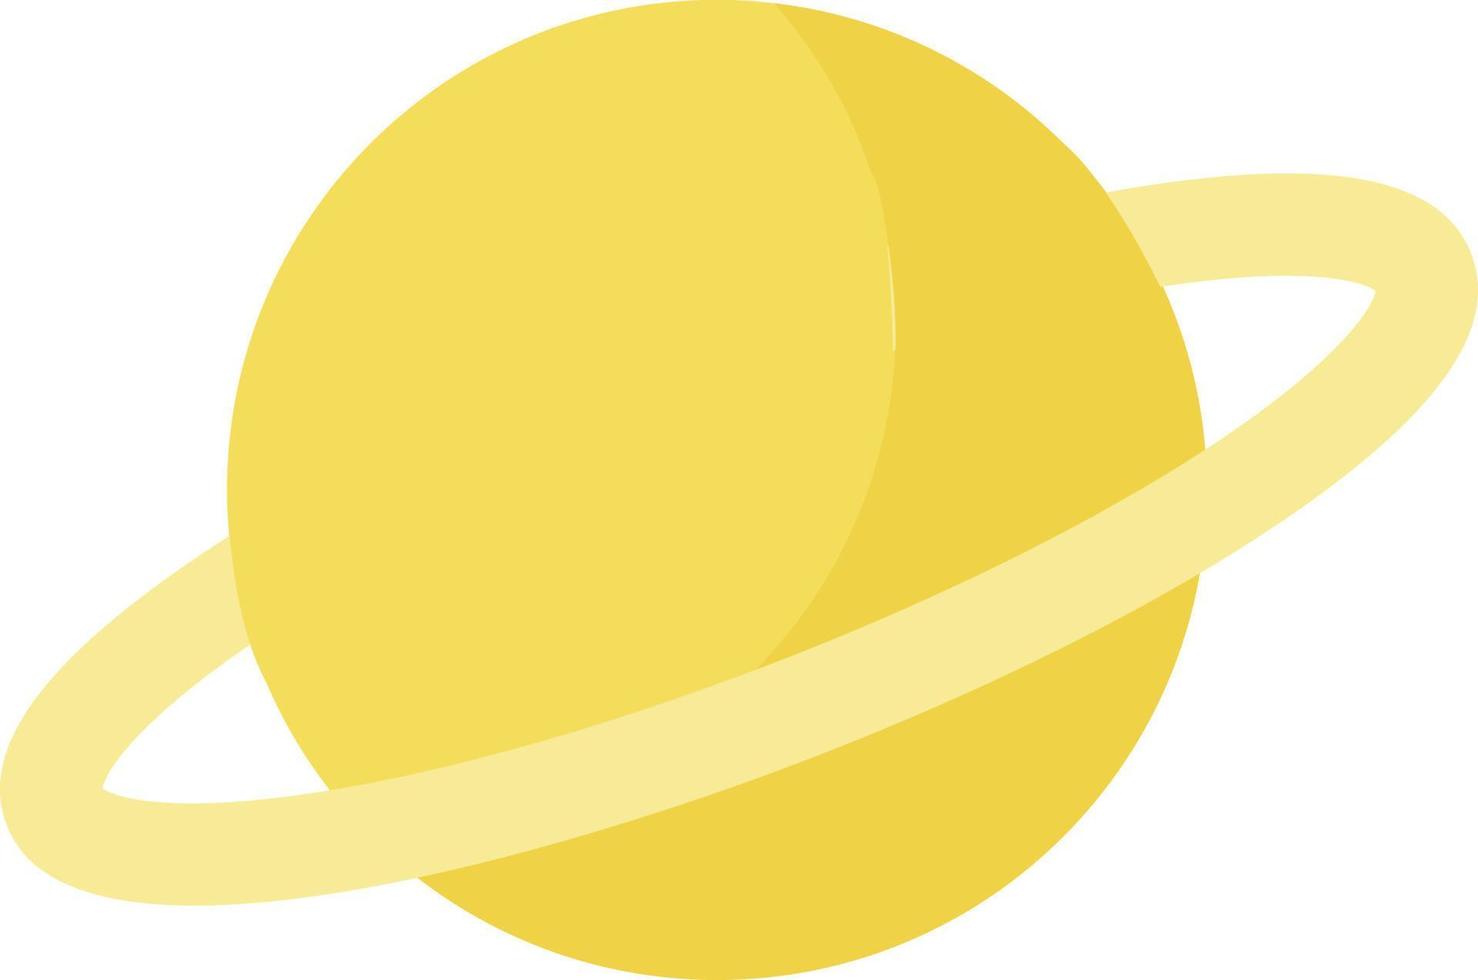 Saturne jaune, illustration, vecteur sur fond blanc.